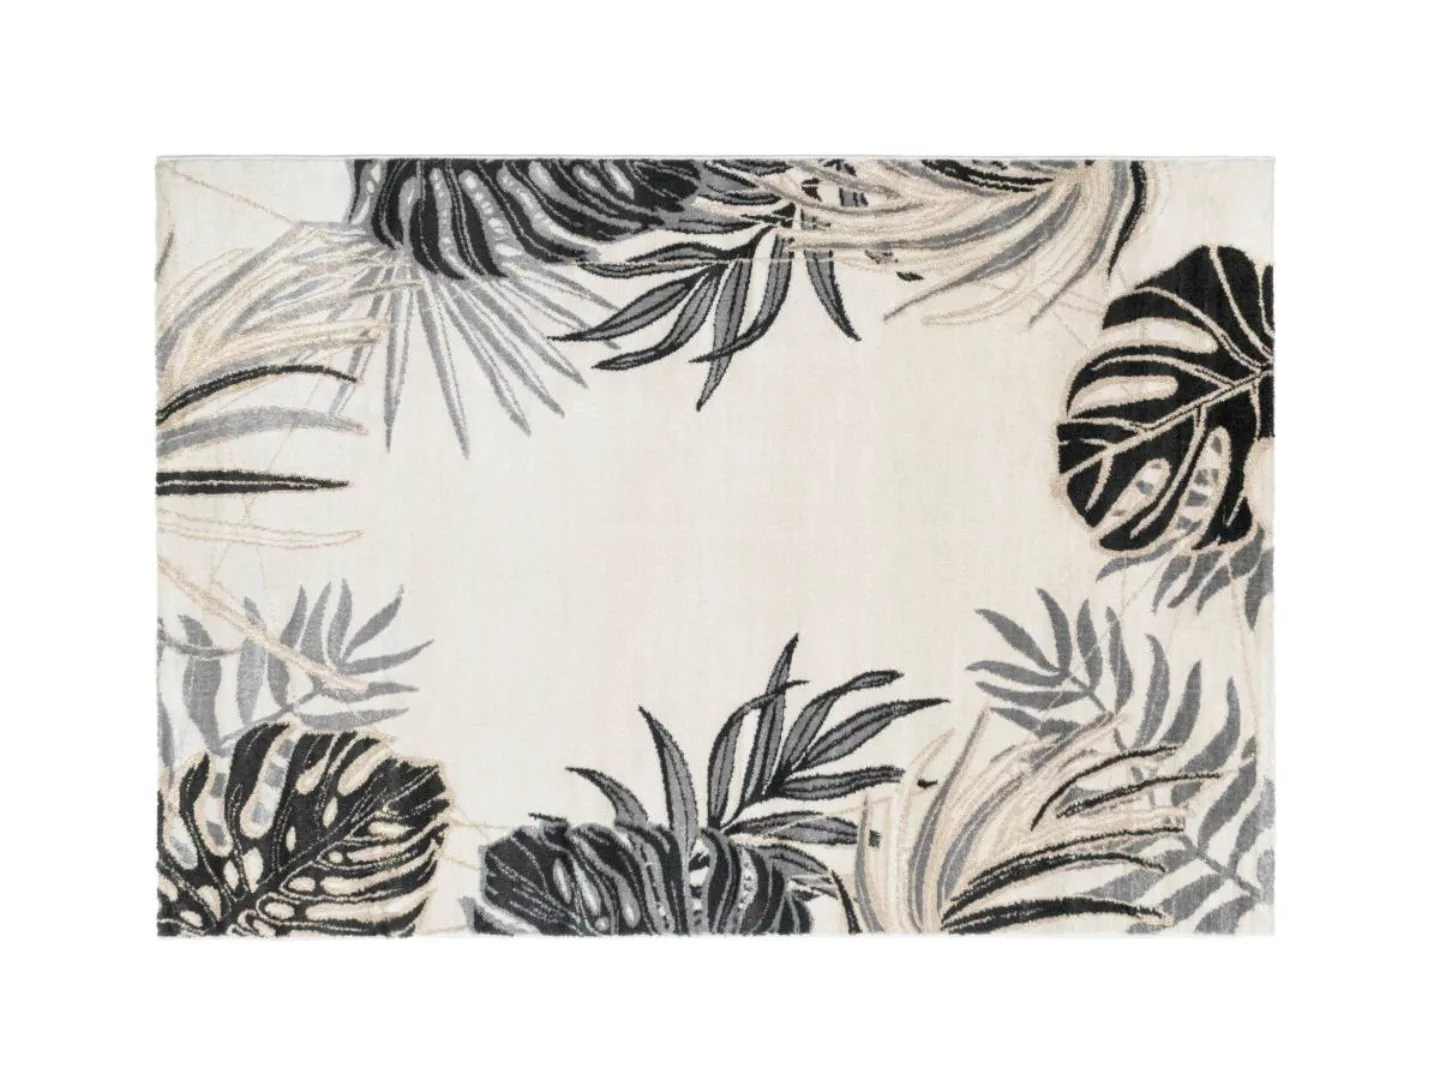 Teppich Ethno-Stil - 160 x 230 cm - Beige & Goldfarben - FEUILLA günstig online kaufen